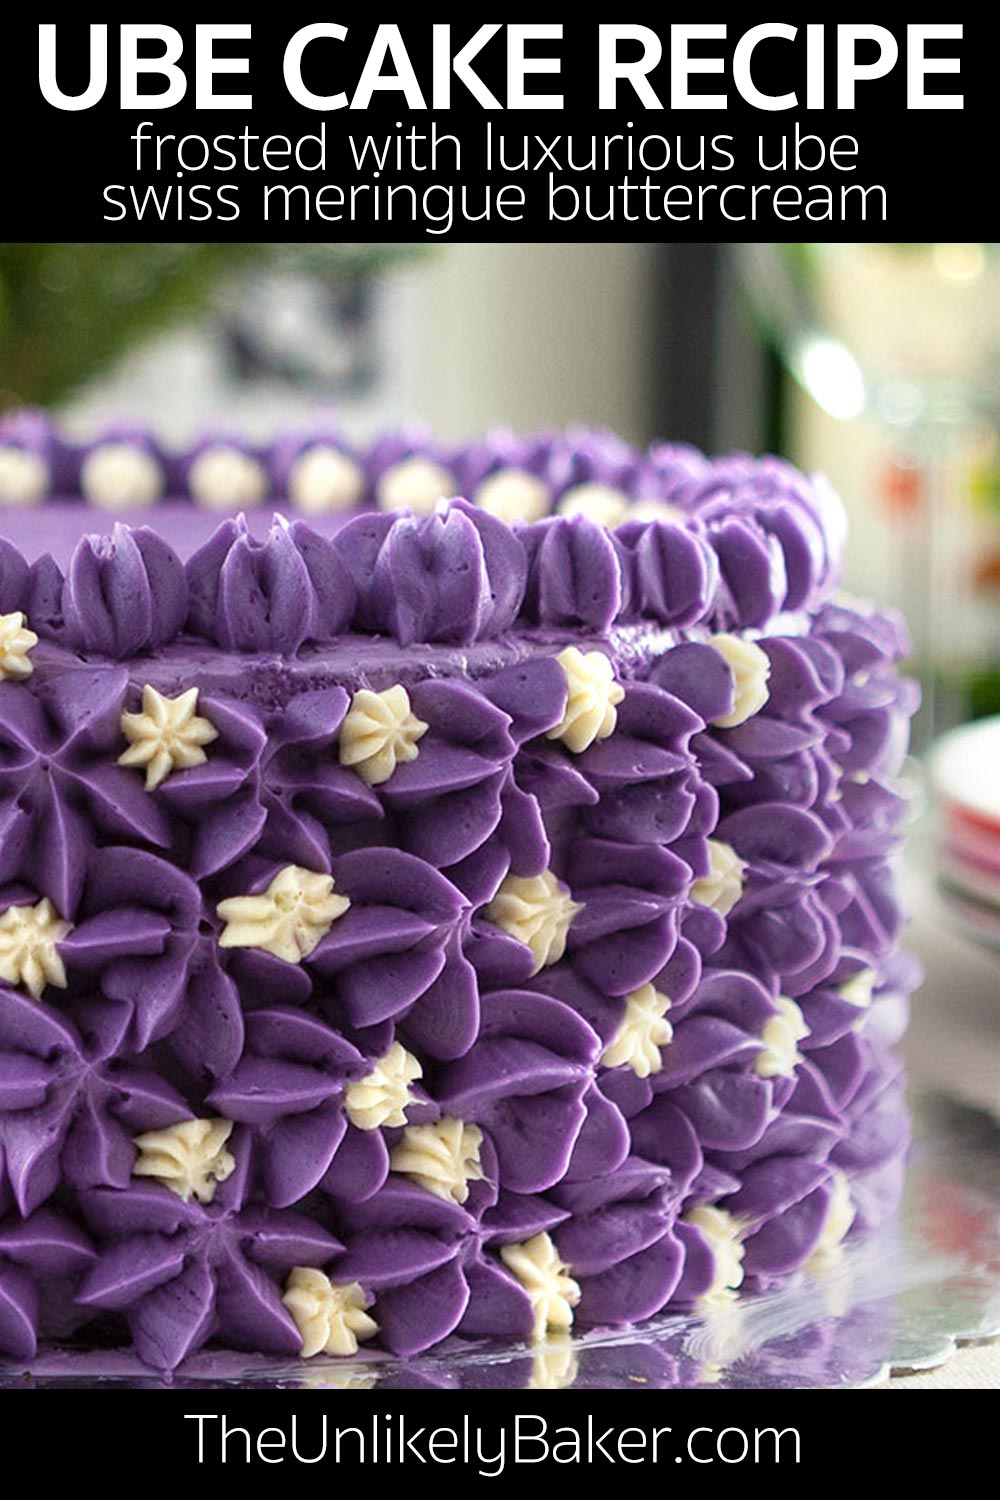 Ube Cake (Filipino Purple Yam Cake) - The Unlikely Baker